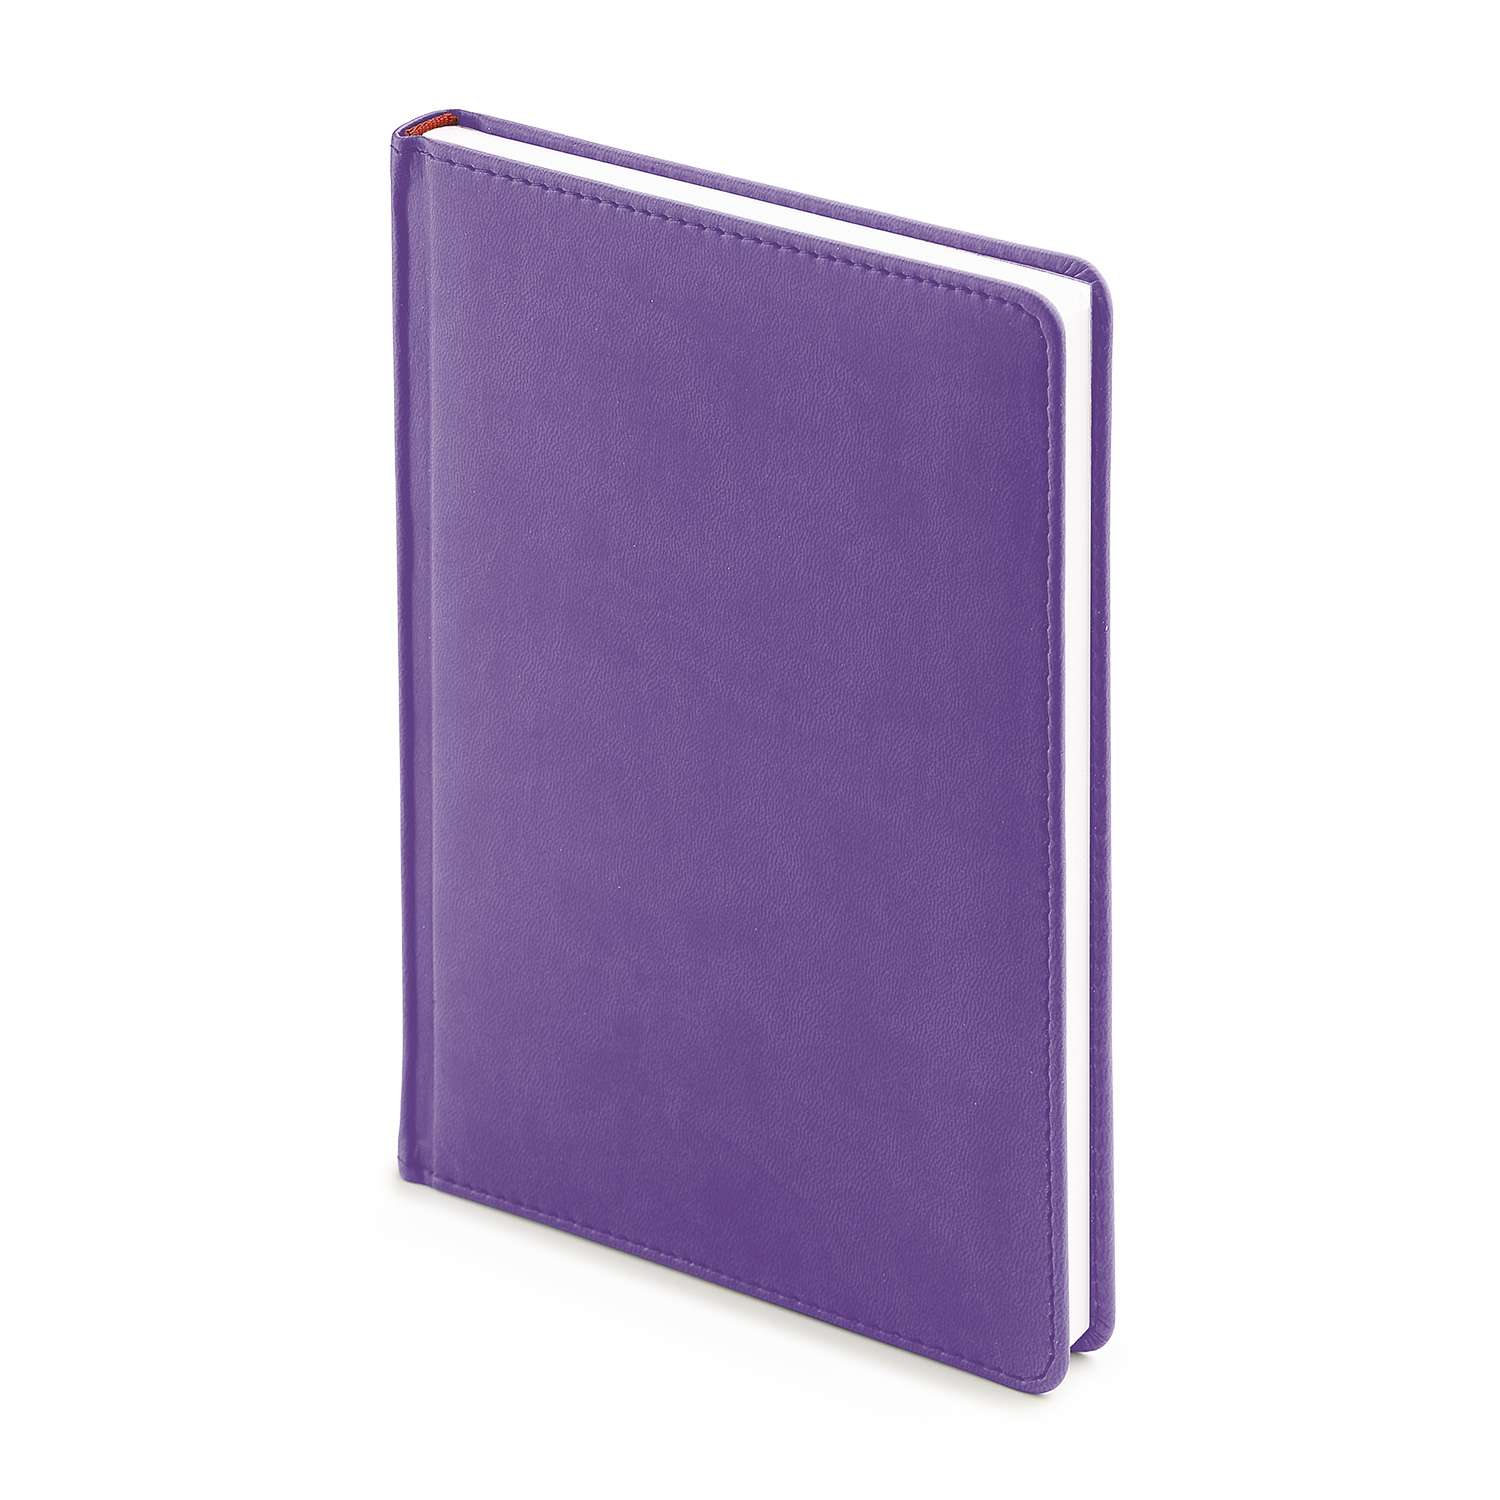 Набор подарочный Альт Velvet зефирный фиолетовый А5 145х205 мм ежедневник и ручка - фото 2